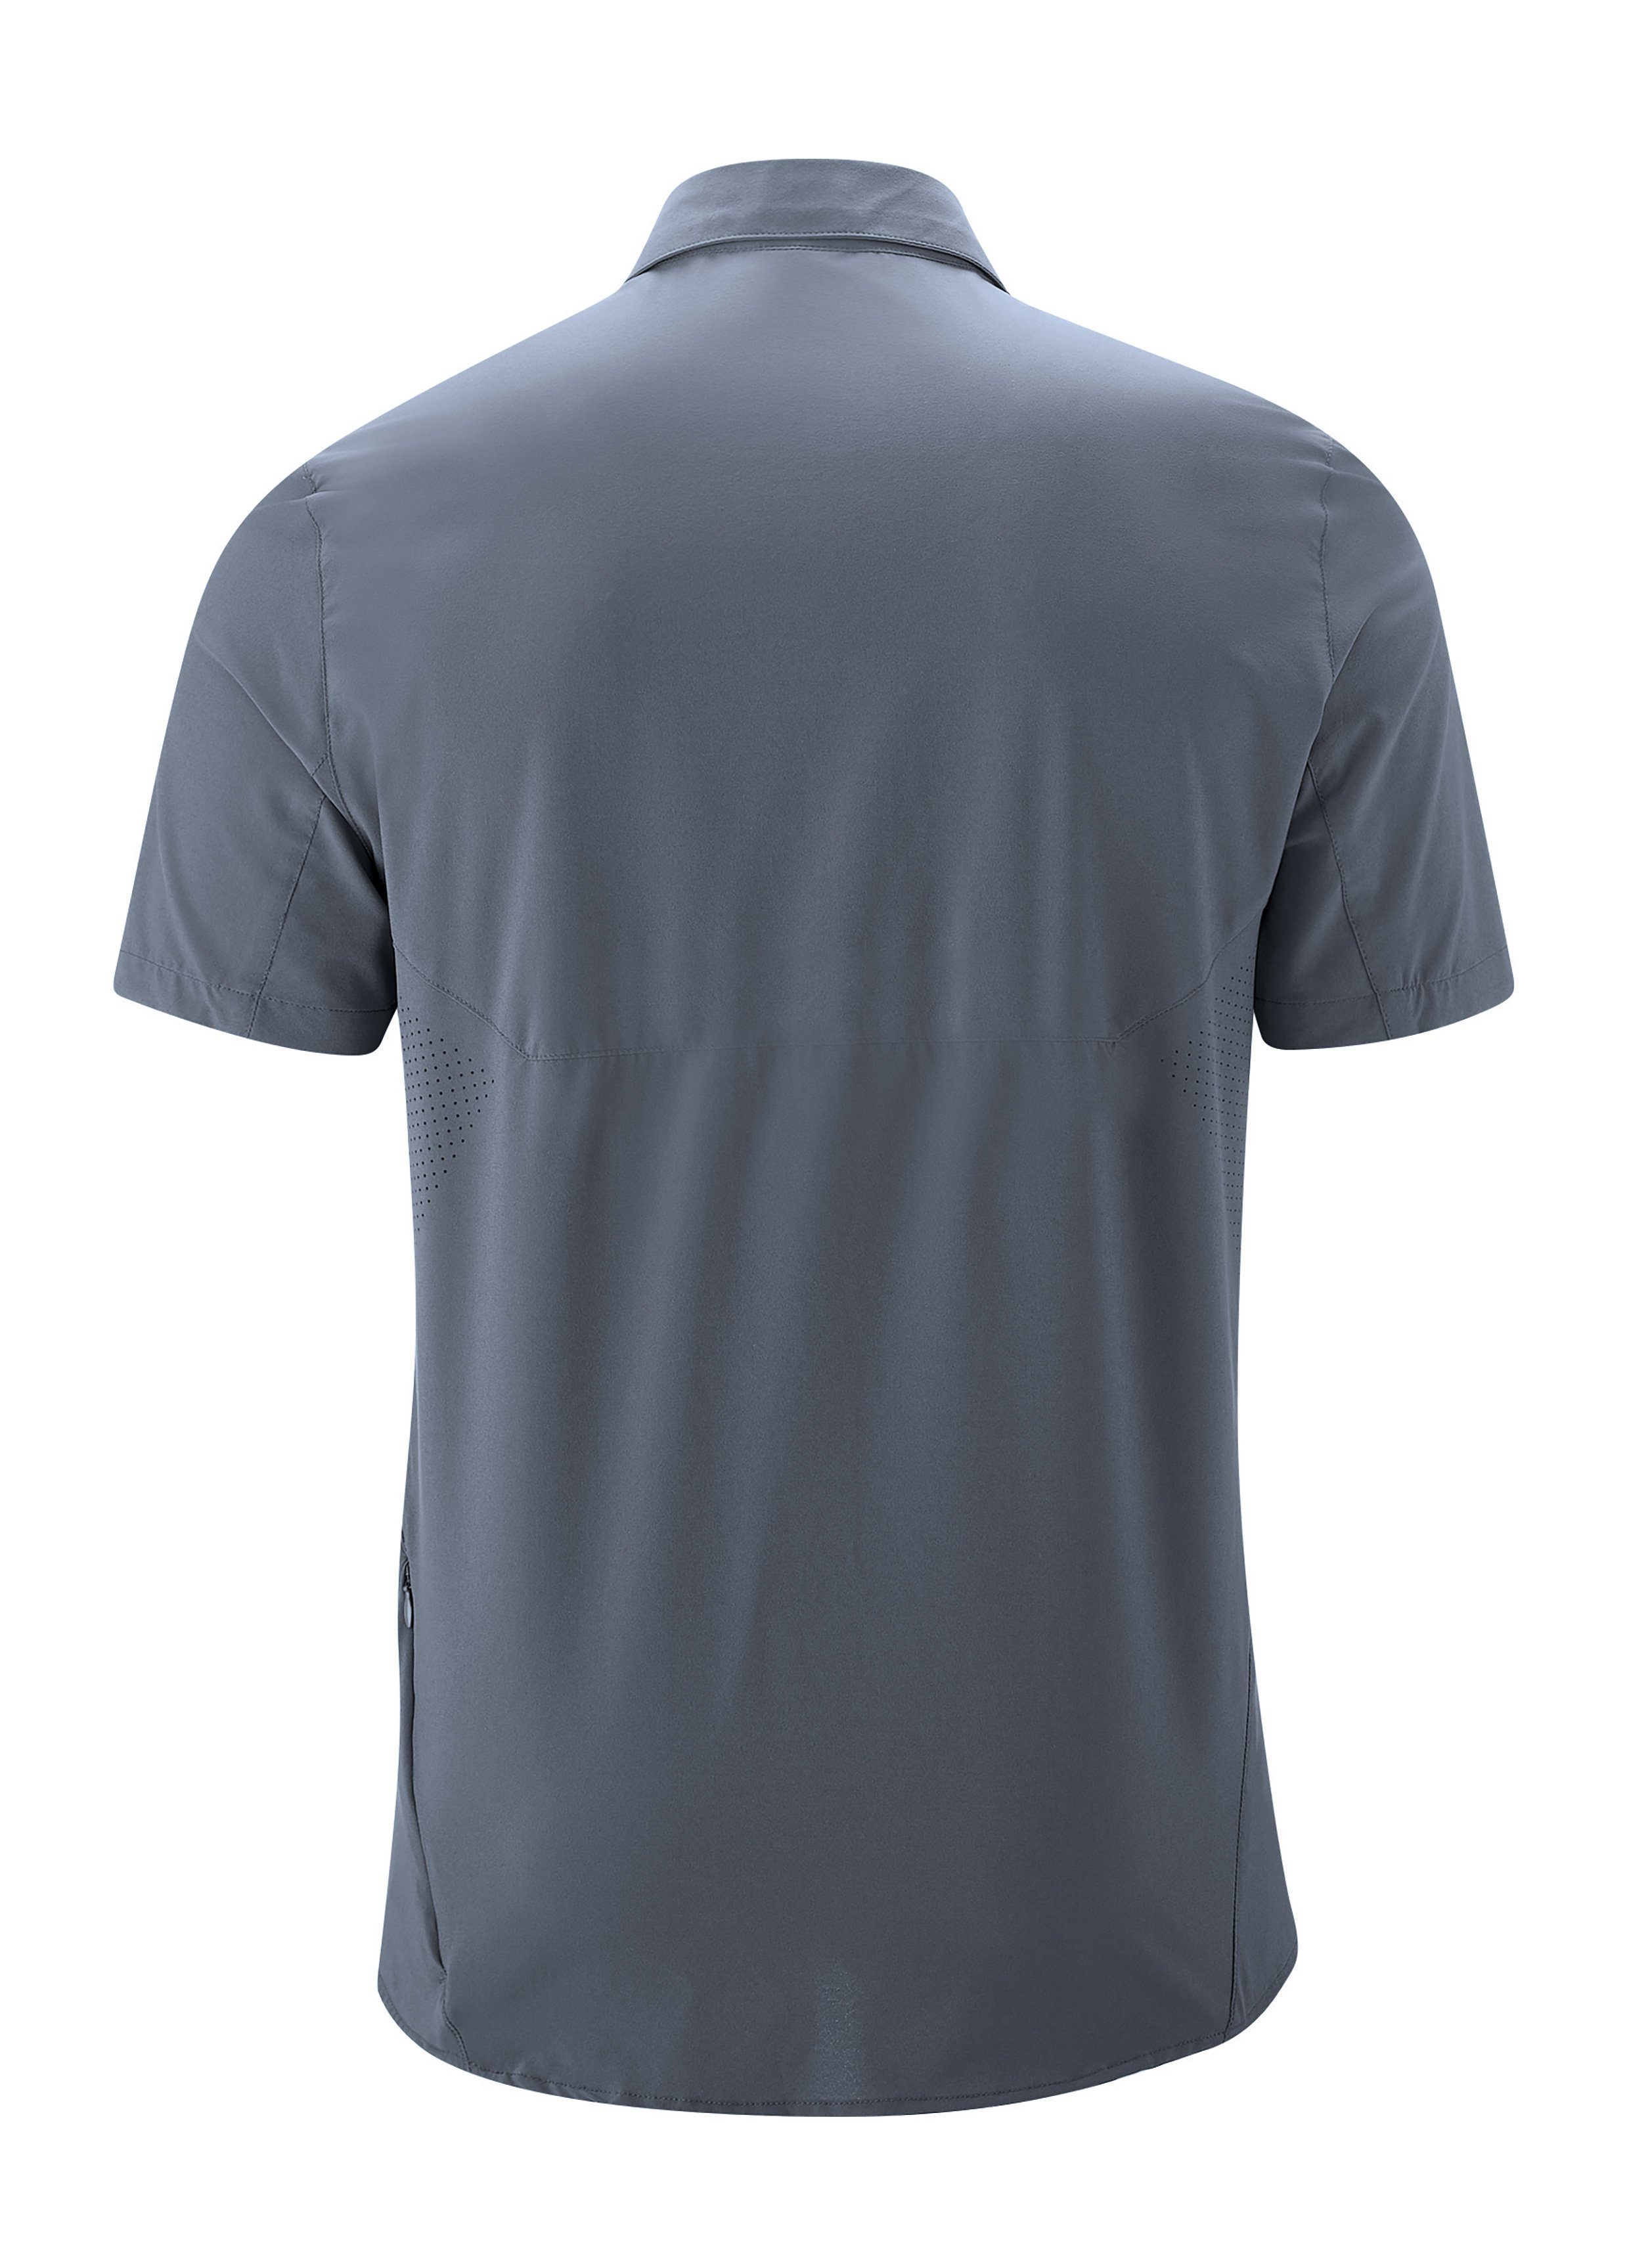 Funktionshemd MS/S Tec mit Sonnenkragen graublau Sinnes Maier Trekkinghemd Leichtes, Sports elastisches